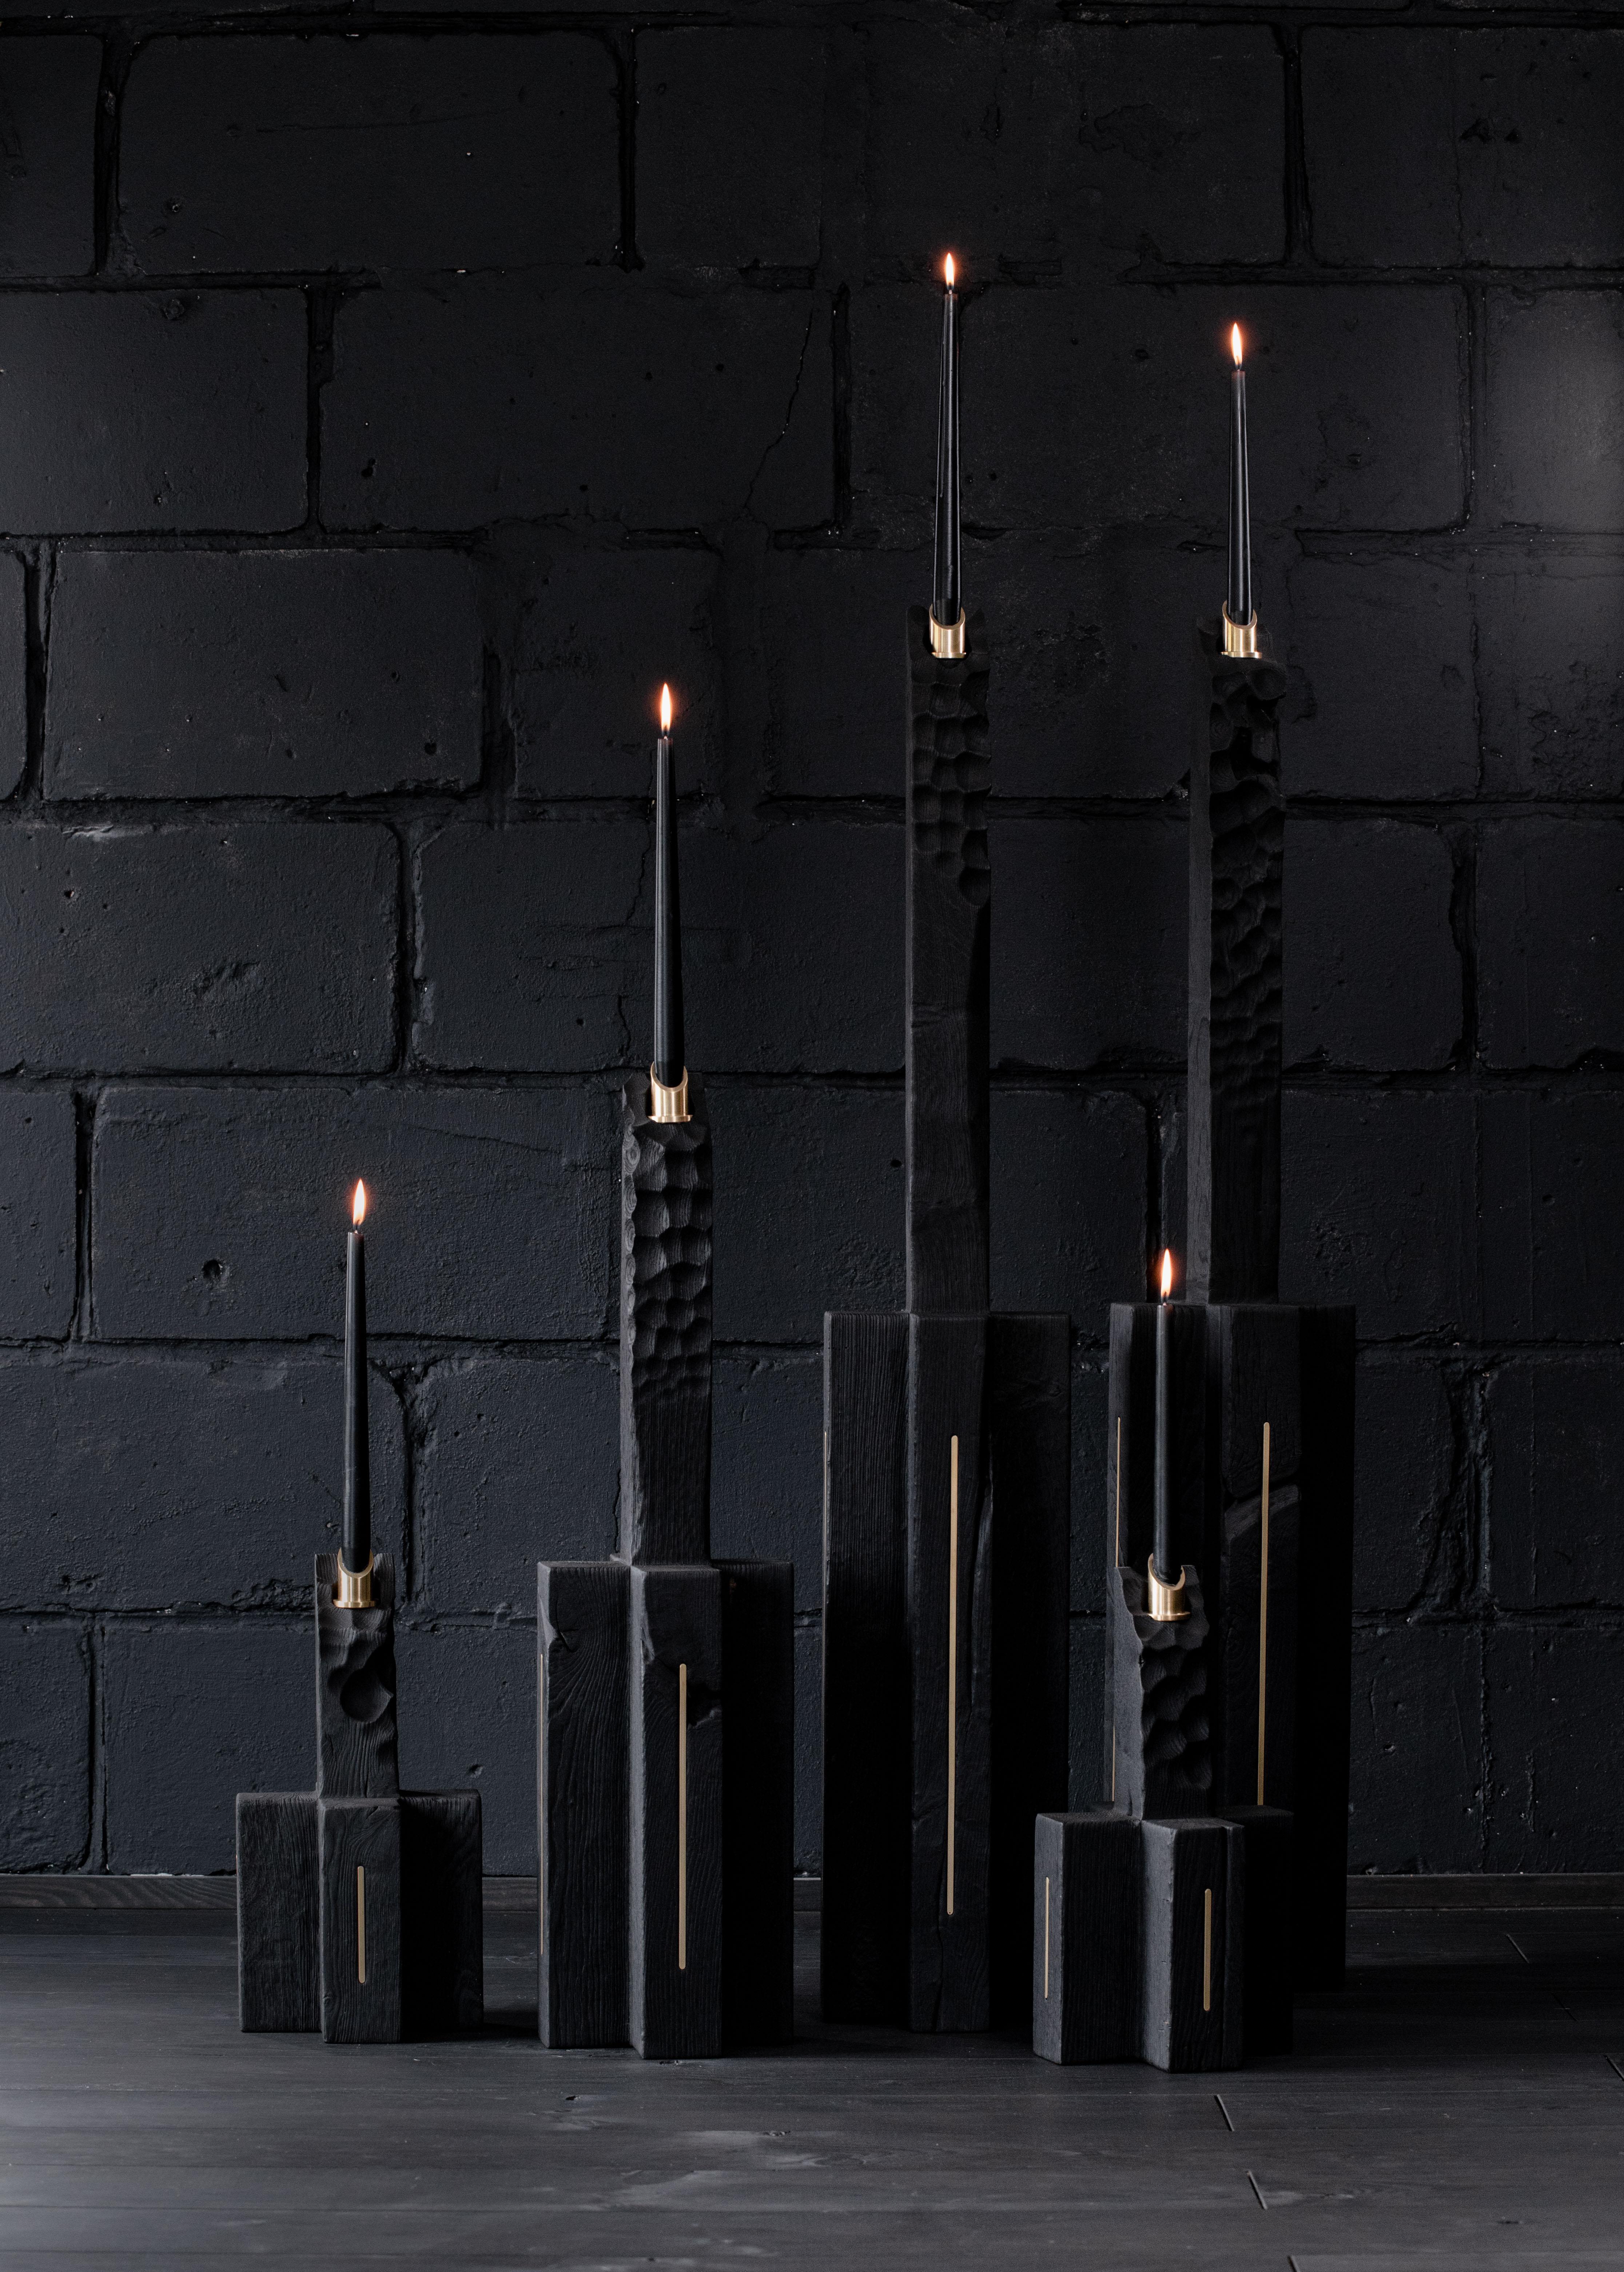 Einzigartige Wurzelkerze groß von Jeremy Descamps
Einzigartiges Stück
Abmessungen: 20 x 20 x 120 cm
MATERIALIEN: Kerzen in massiver Eiche aus dem Land in Flamme gebrannt, Einsätze in Messing, Unterstützung der Kerzen in Messing.

Selbst an den